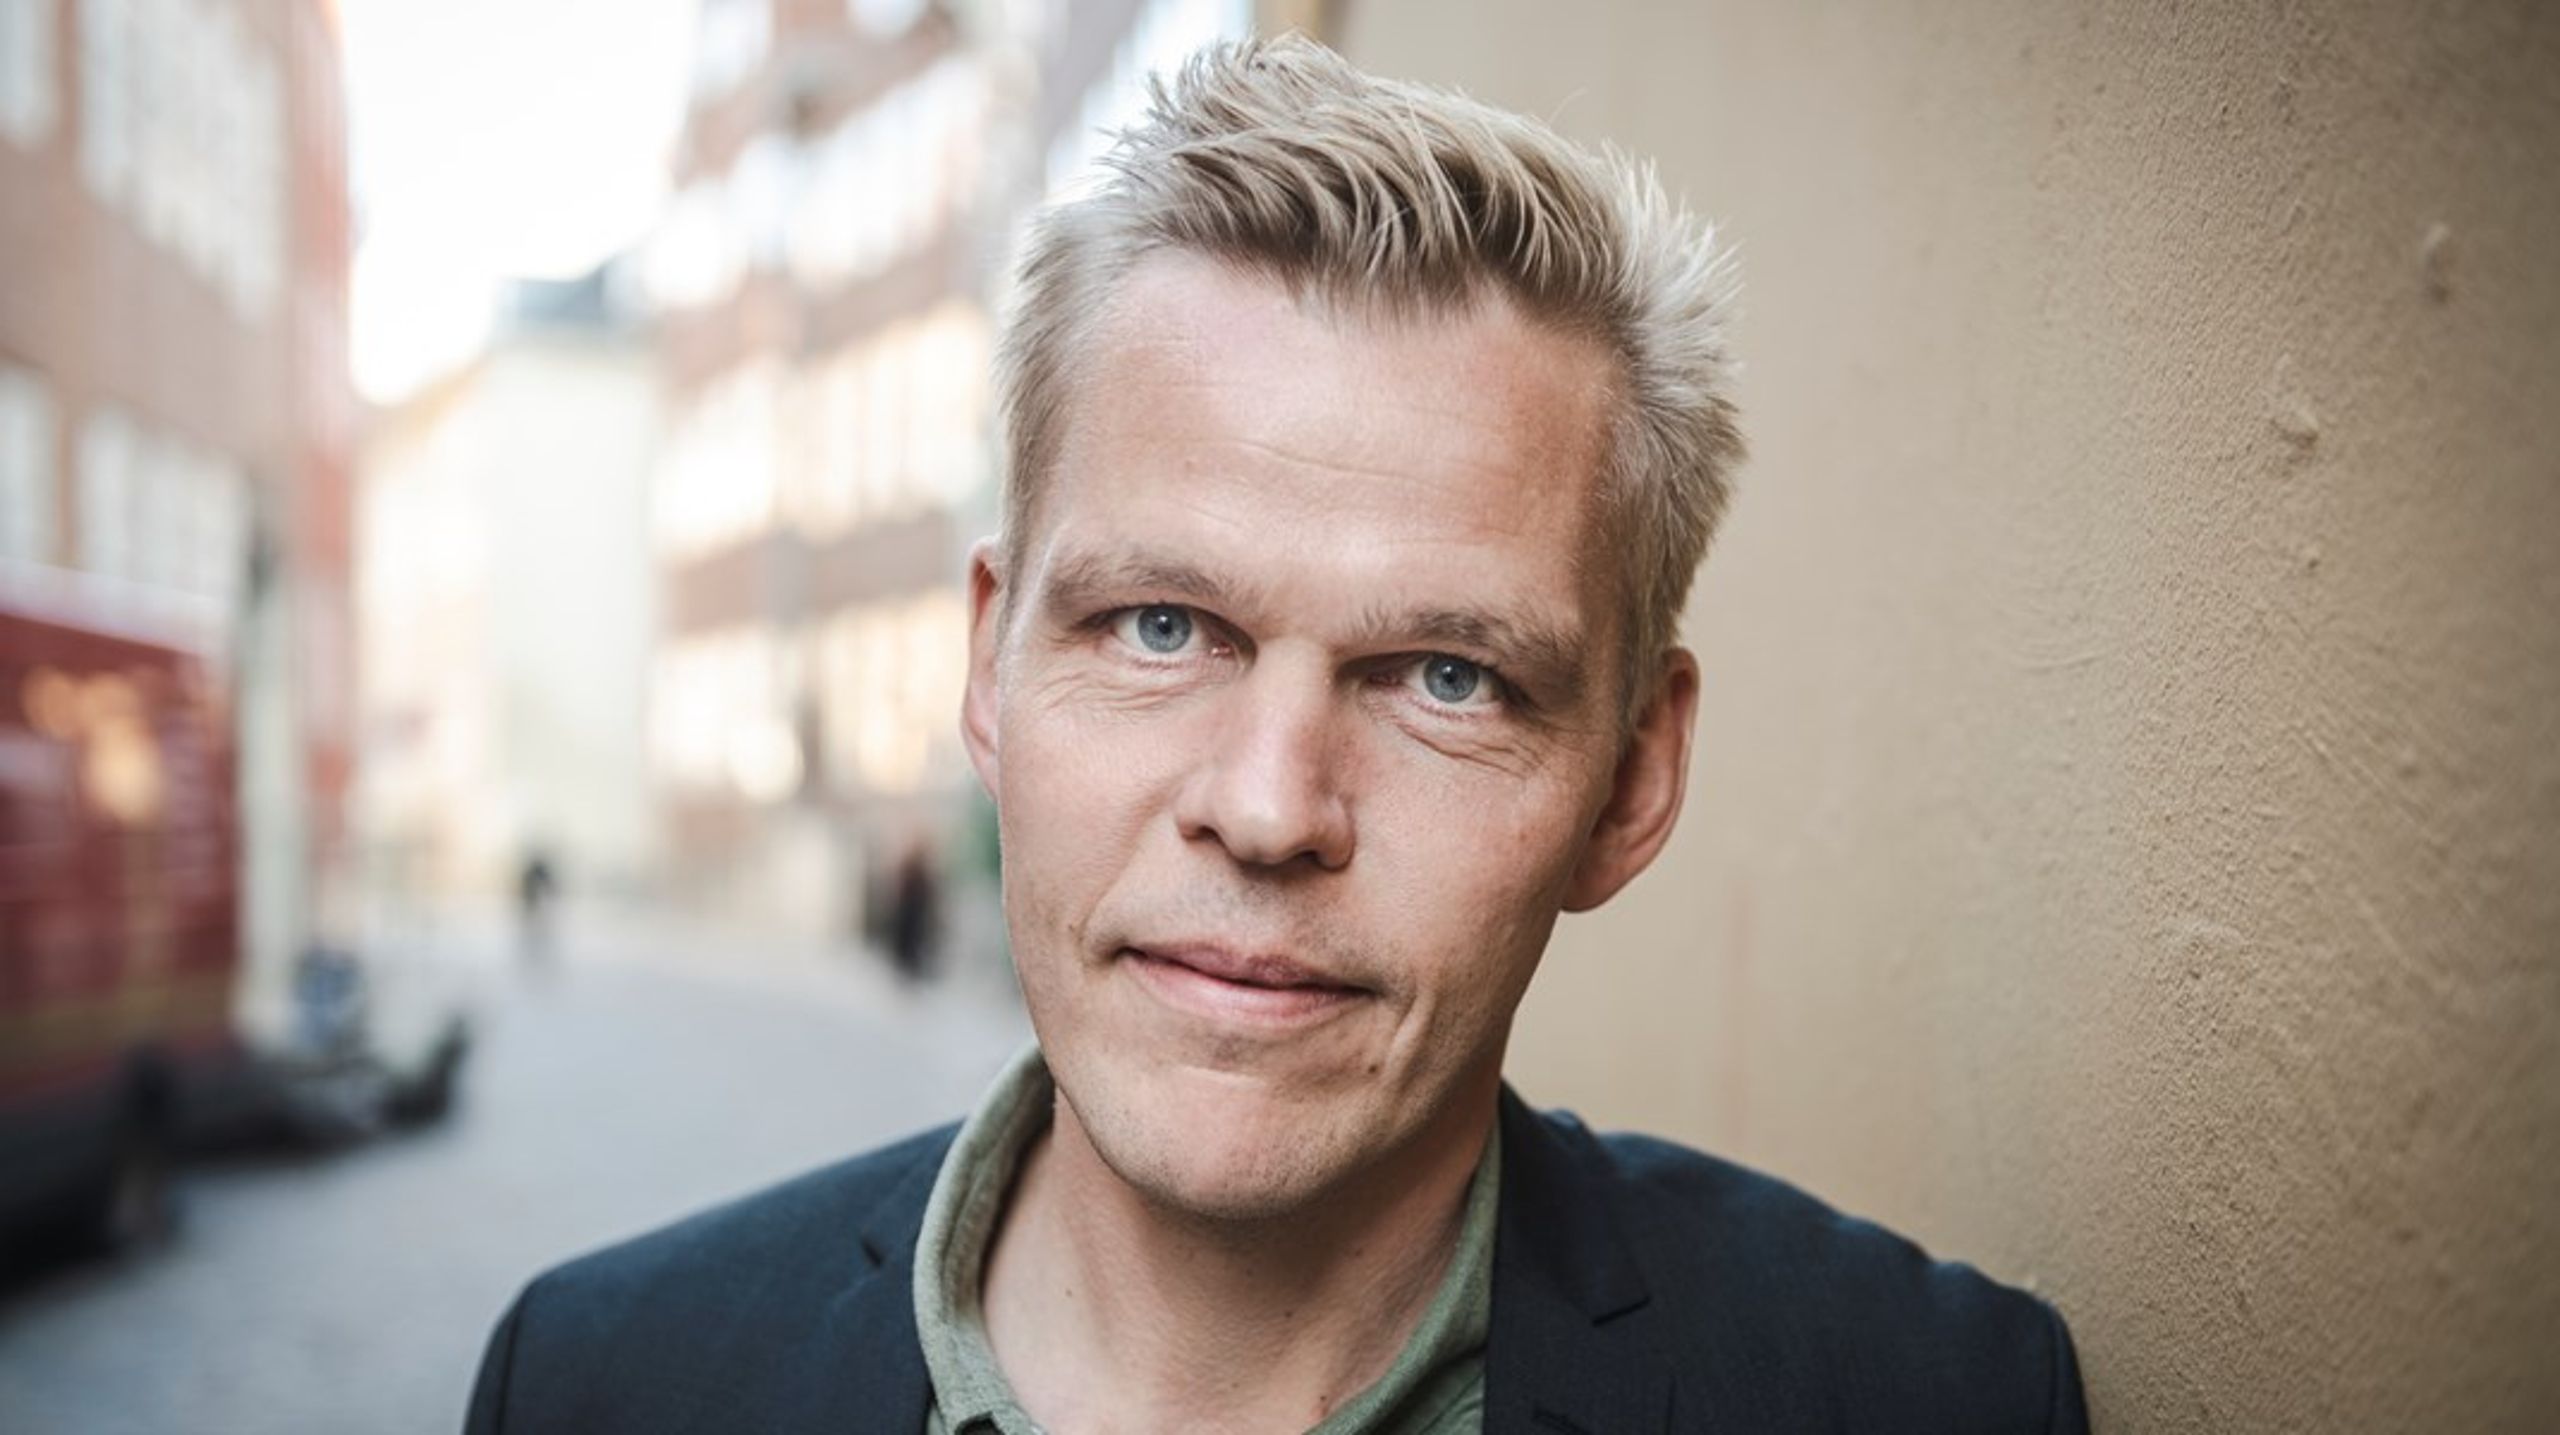 Jens Dissing Munk de Klauman har været pressechef&nbsp;i Danmarks Lærerforening siden 2018.&nbsp;Før da var han pressechef i Dansk Metal, men&nbsp;har også tidligere arbejdet for Landbrug og Fødevarer og Miljøstyrelsen.